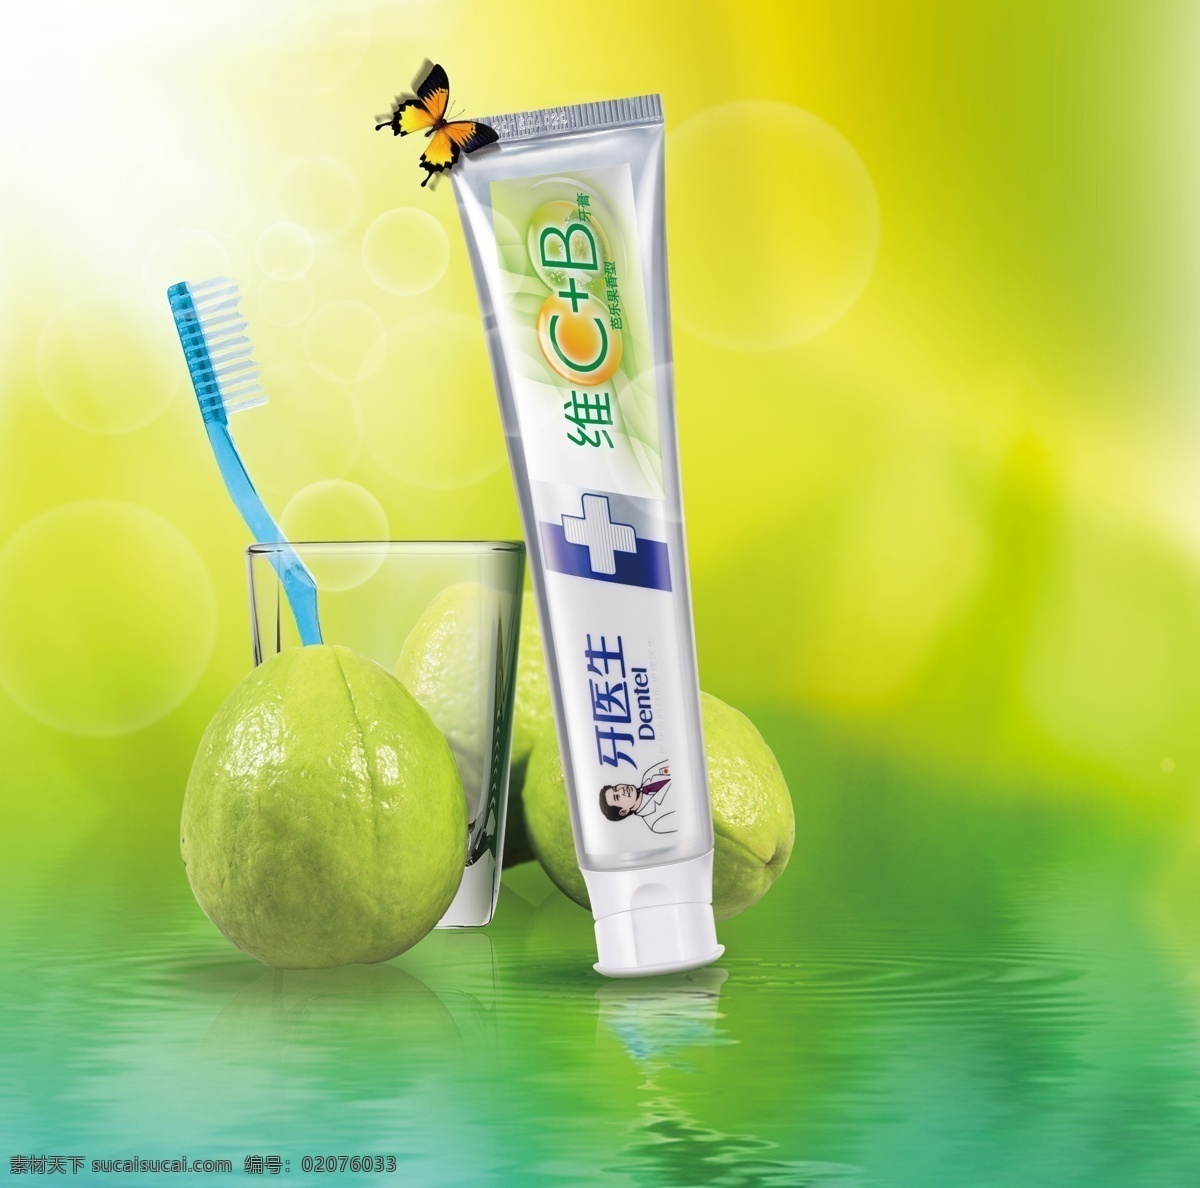 牙膏海报模版 手册宣传图 产品展示 品牌 手册 图 牙膏 杯子 牙刷 石榴 绿色 倒影 背景